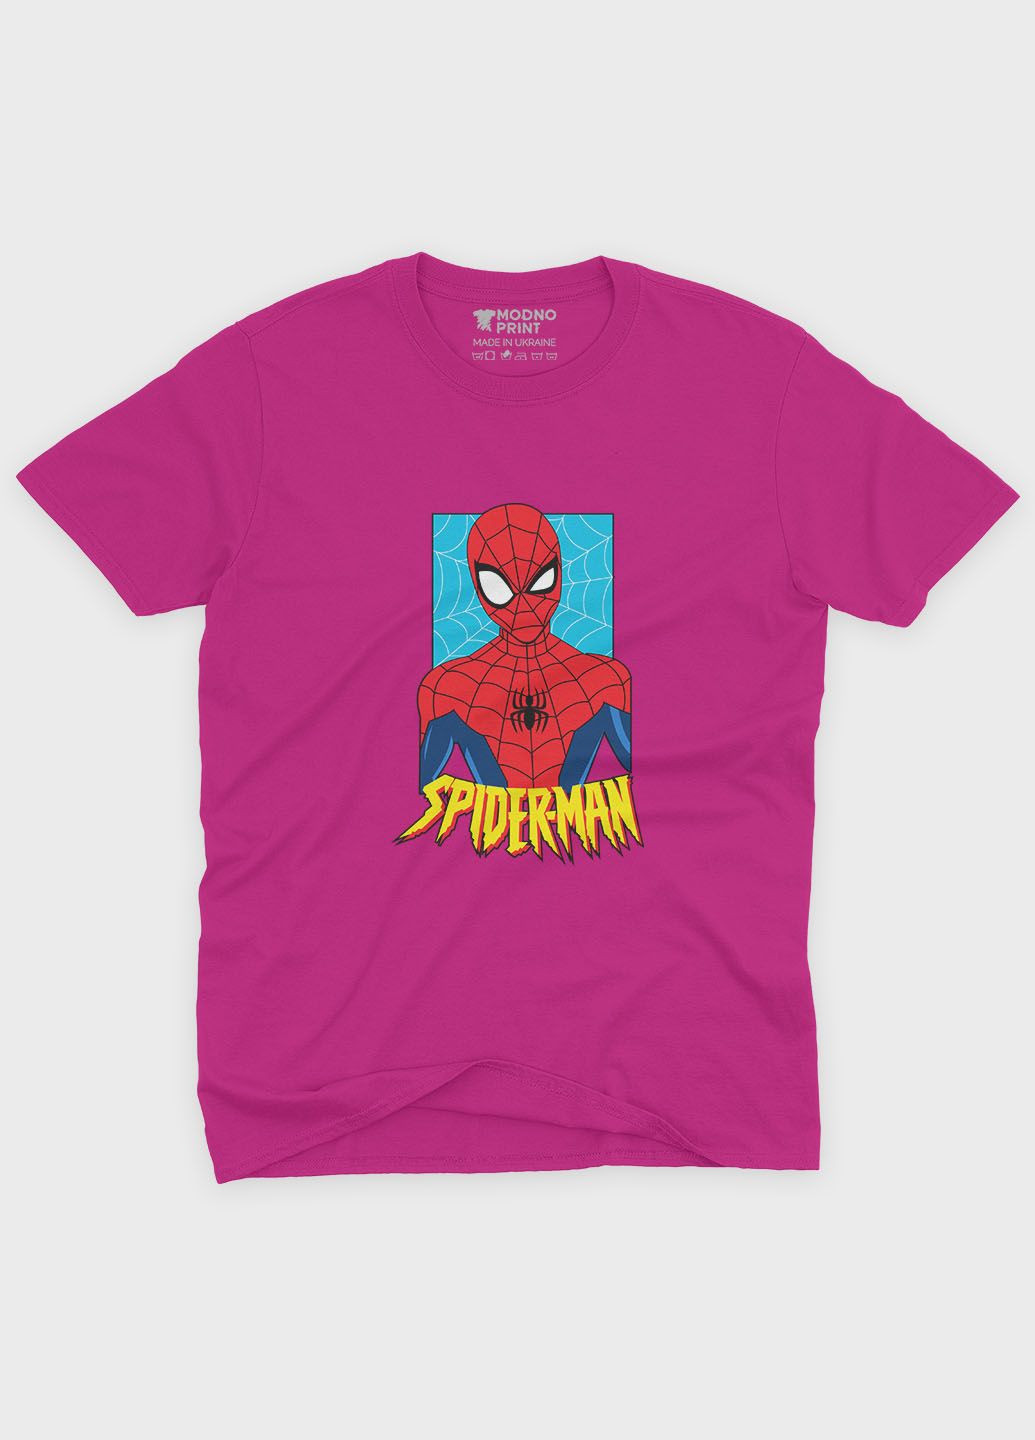 Розовая демисезонная футболка для девочки с принтом супергероя - человек-паук (ts001-1-fuxj-006-014-037-g) Modno